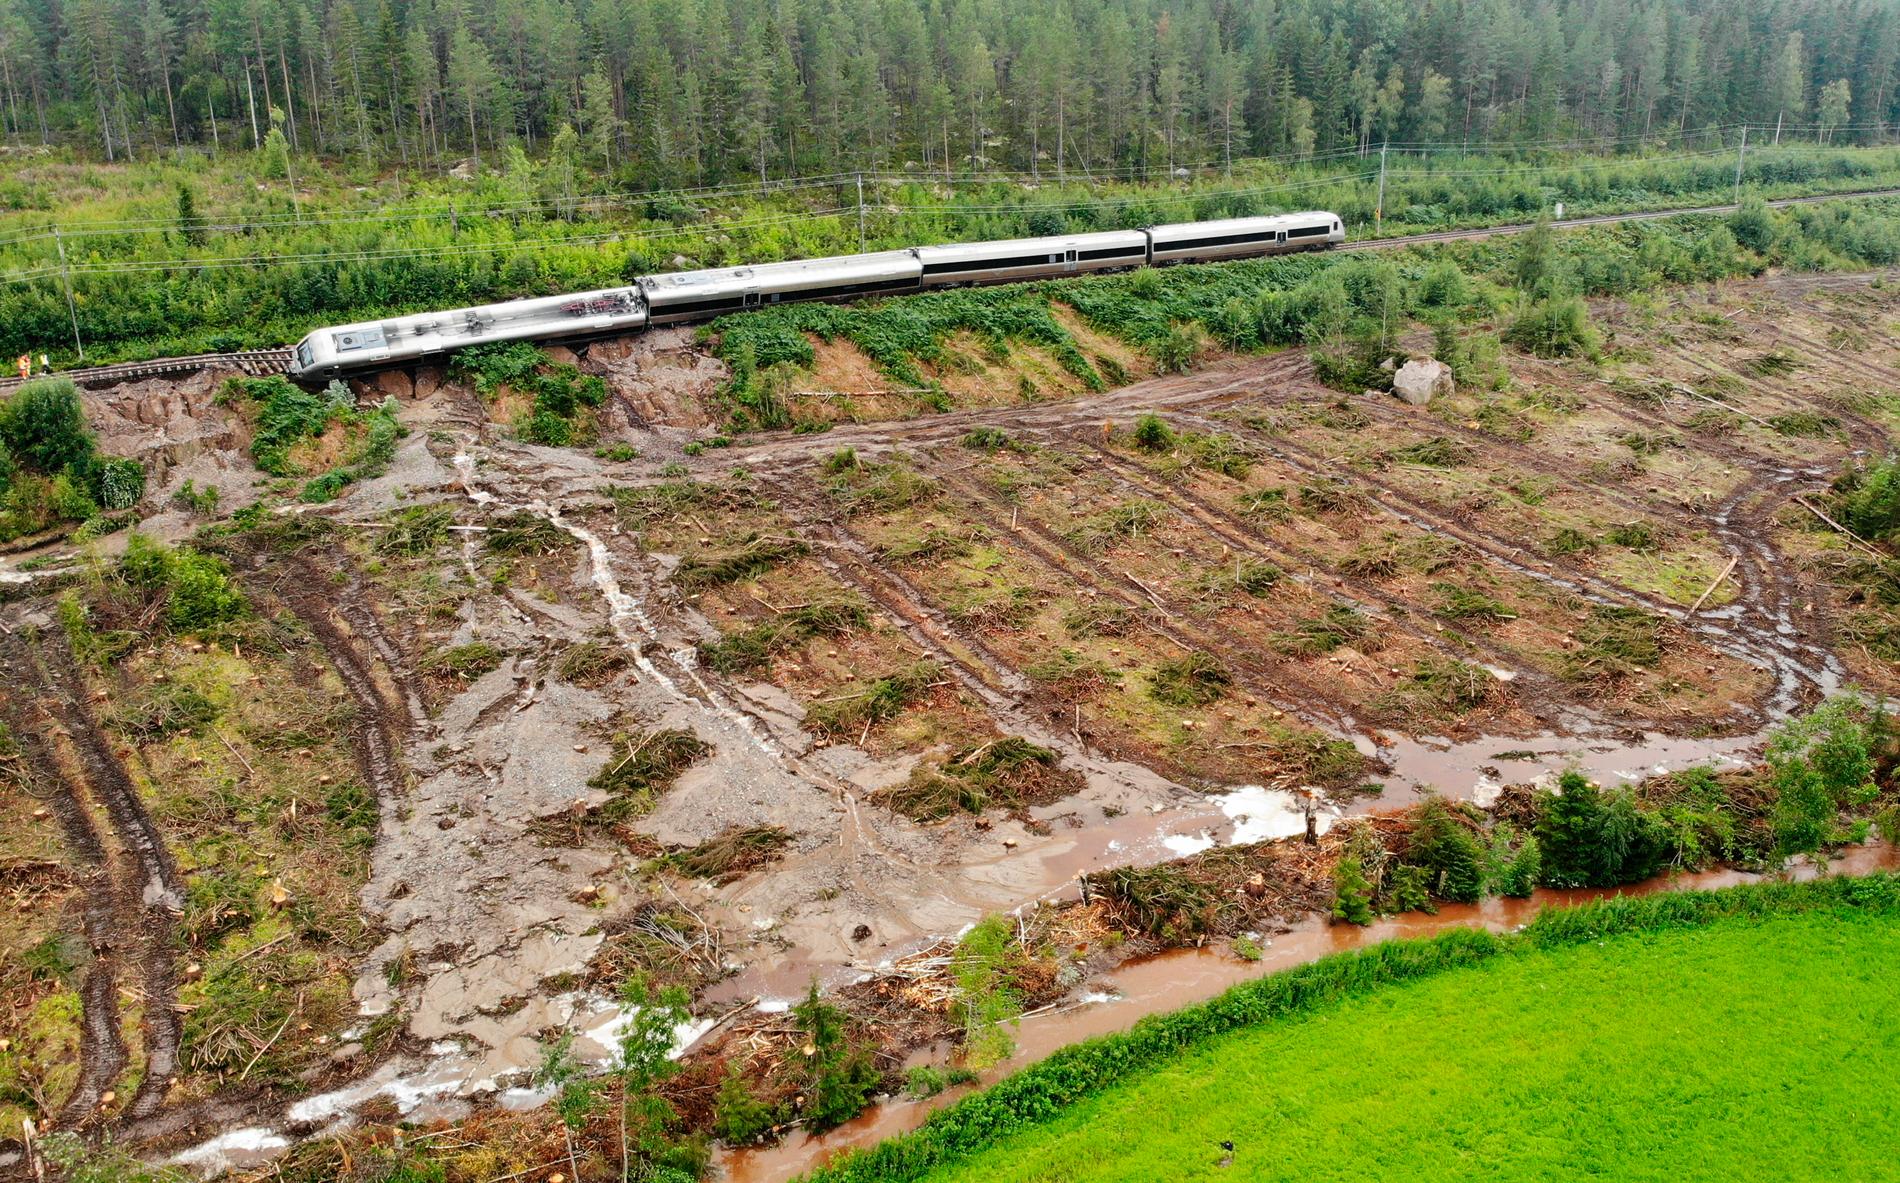 Det kommer dröja ytterligare några veckor innan tågtrafiken kan återupptas igen, efter olyckan utanför Hudiksvall.